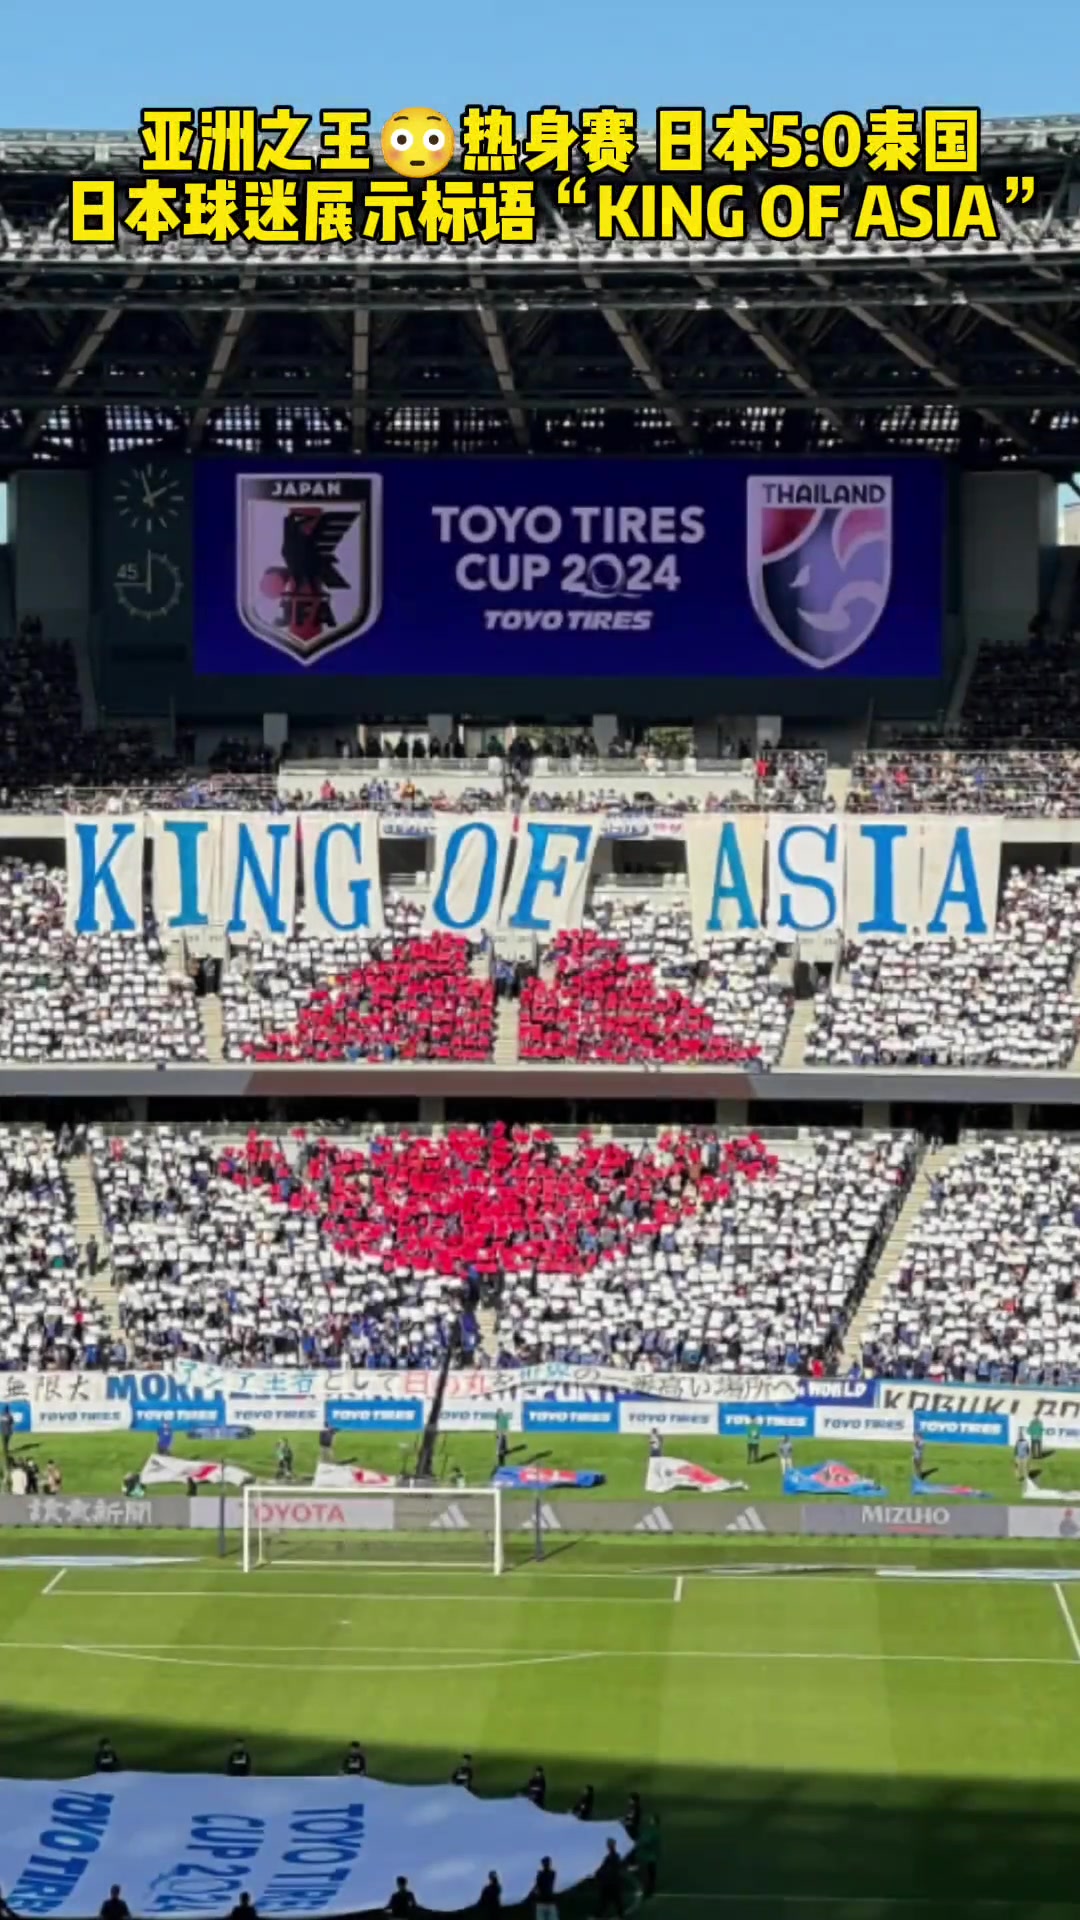 他们是有这个自信的！5-0泰国日本球迷展示标语：亚洲之王